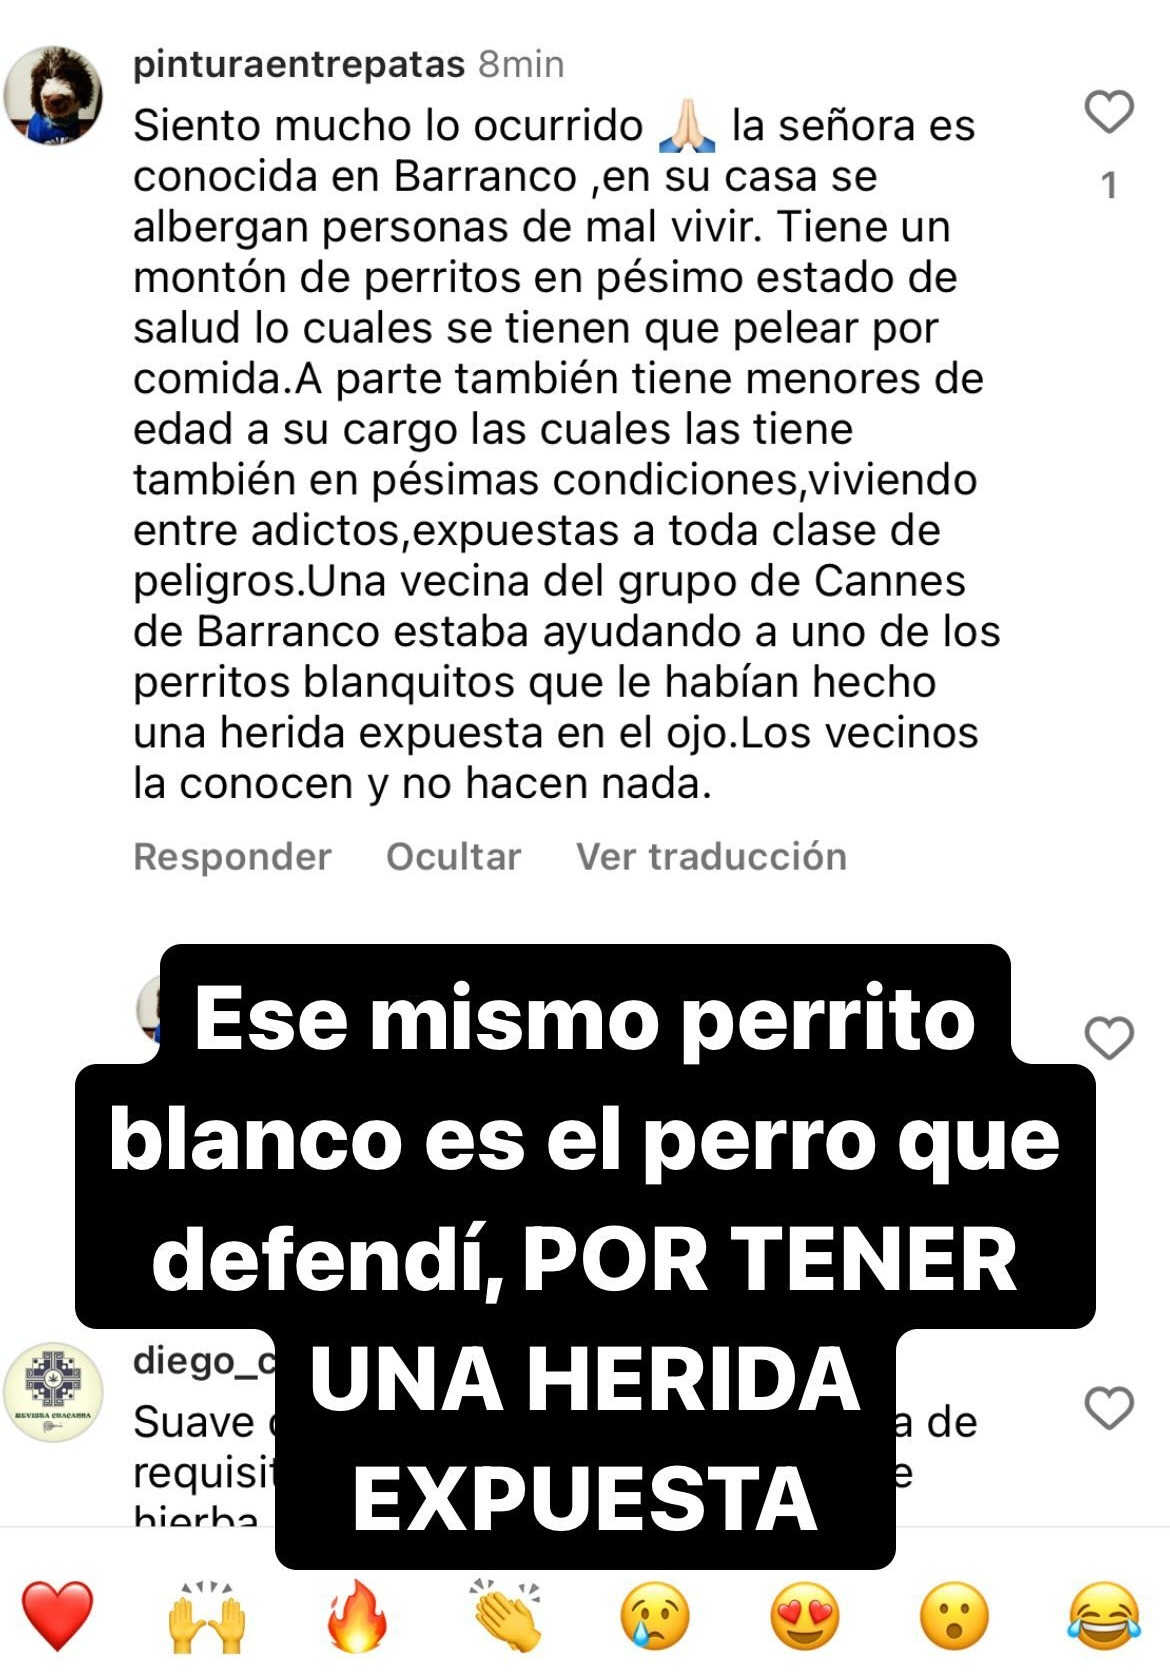 Lucía señala que quiso defender a un perrito herido | Instagram